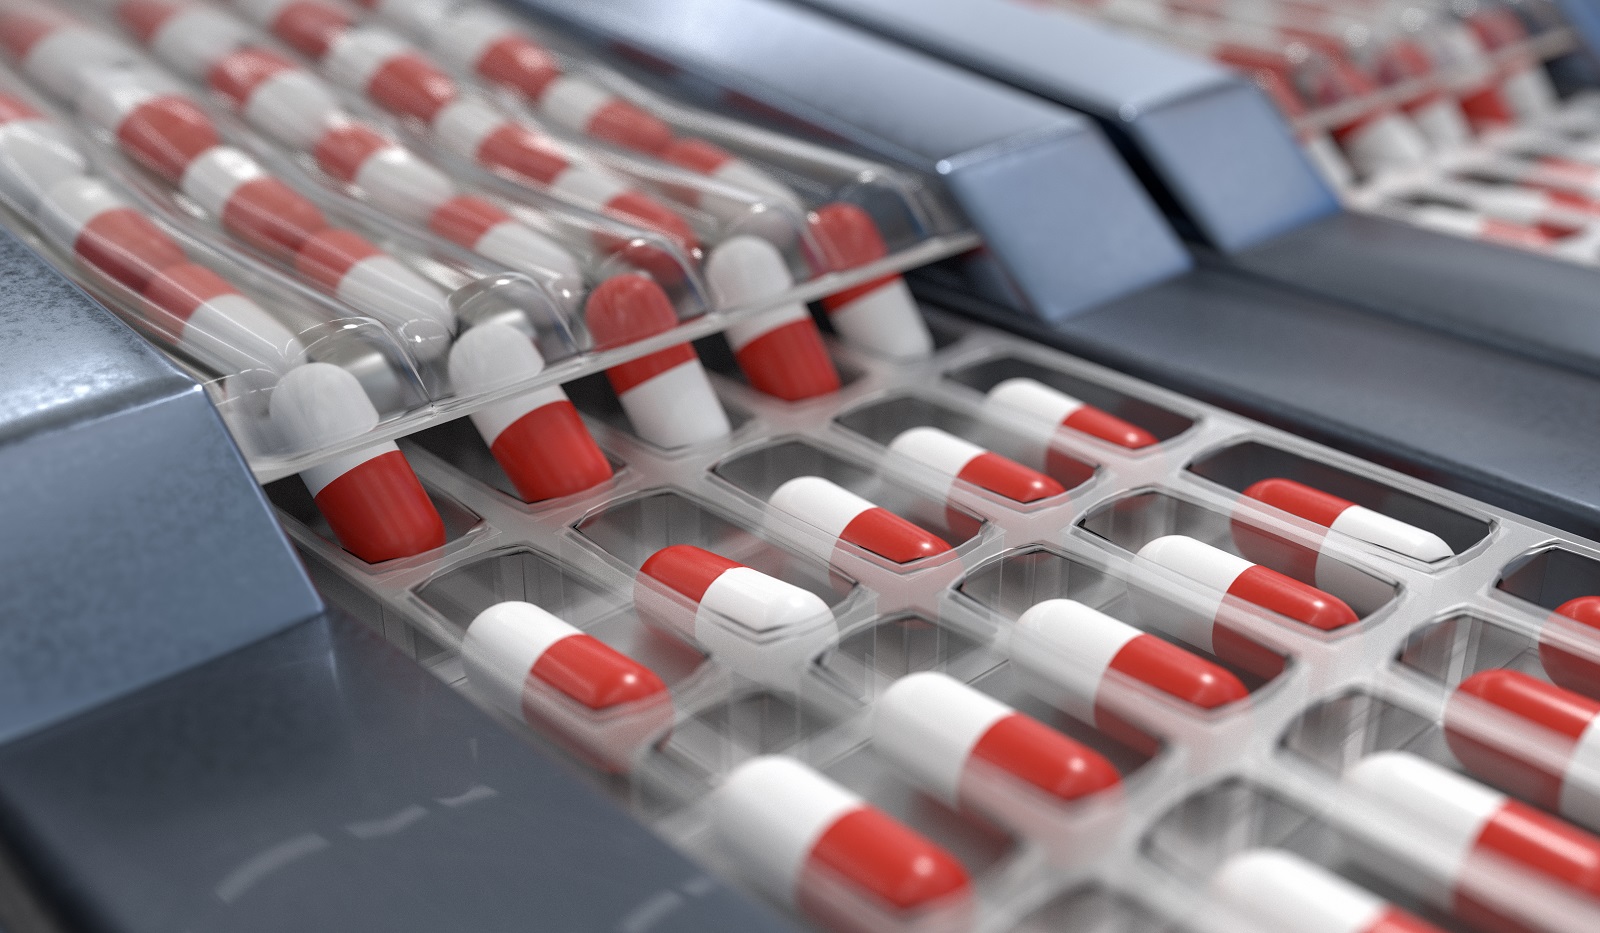 Industrie pharmaceutique: «Le chiffre d’affaires de 31 milliards de dirhams pour 2027 reste plausible»